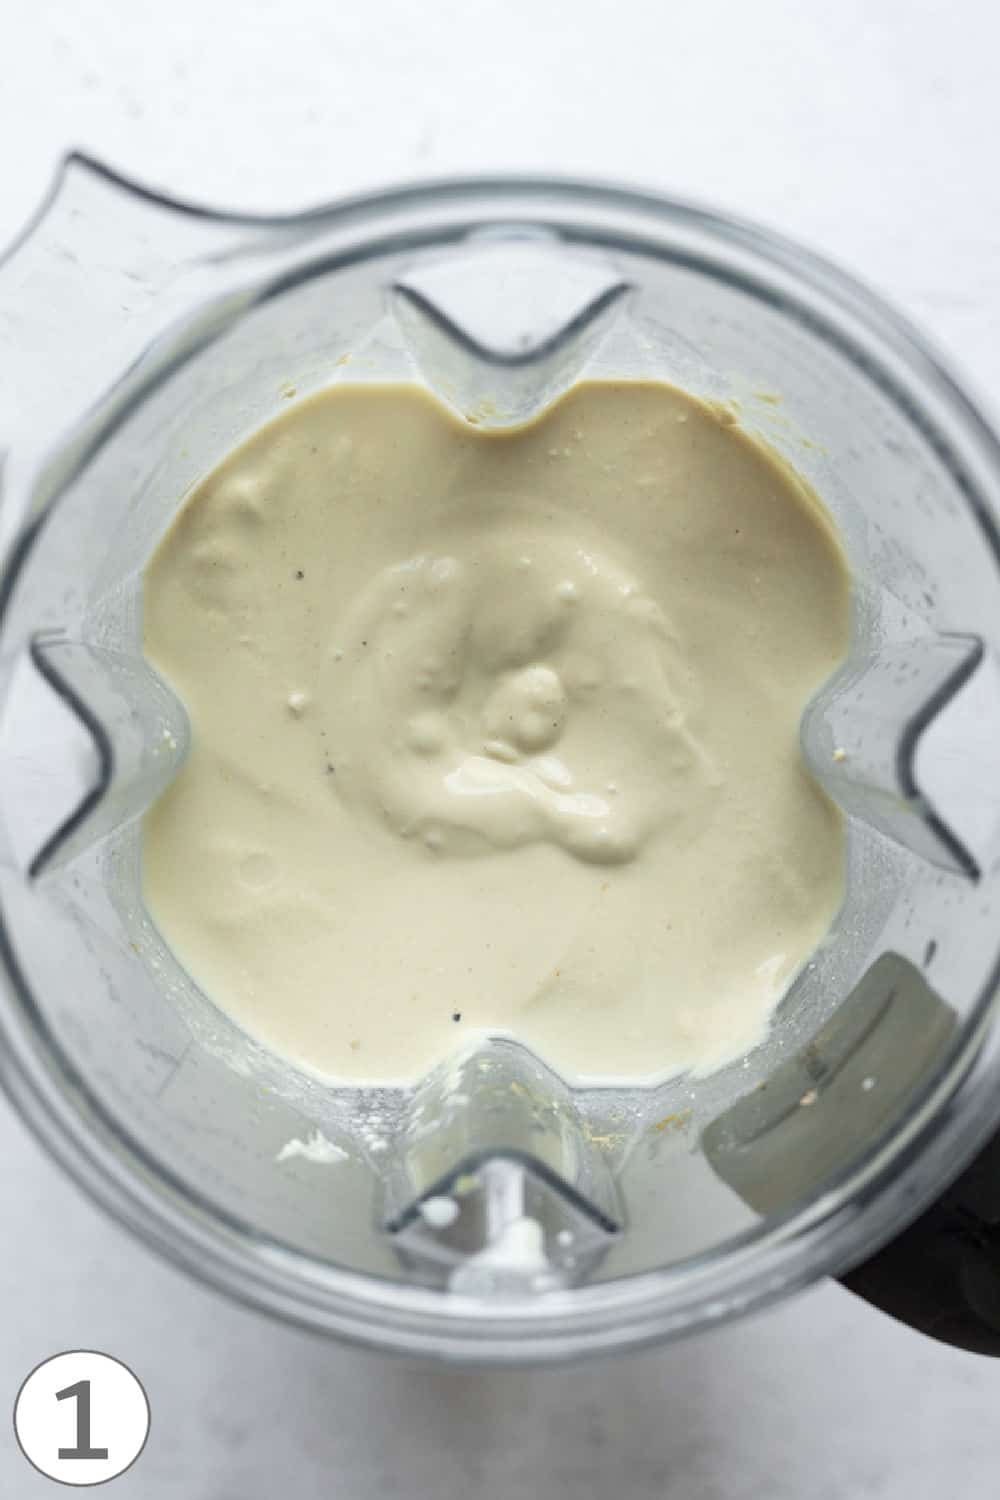 Looking inside a blender at the blended vegan egg mixture.